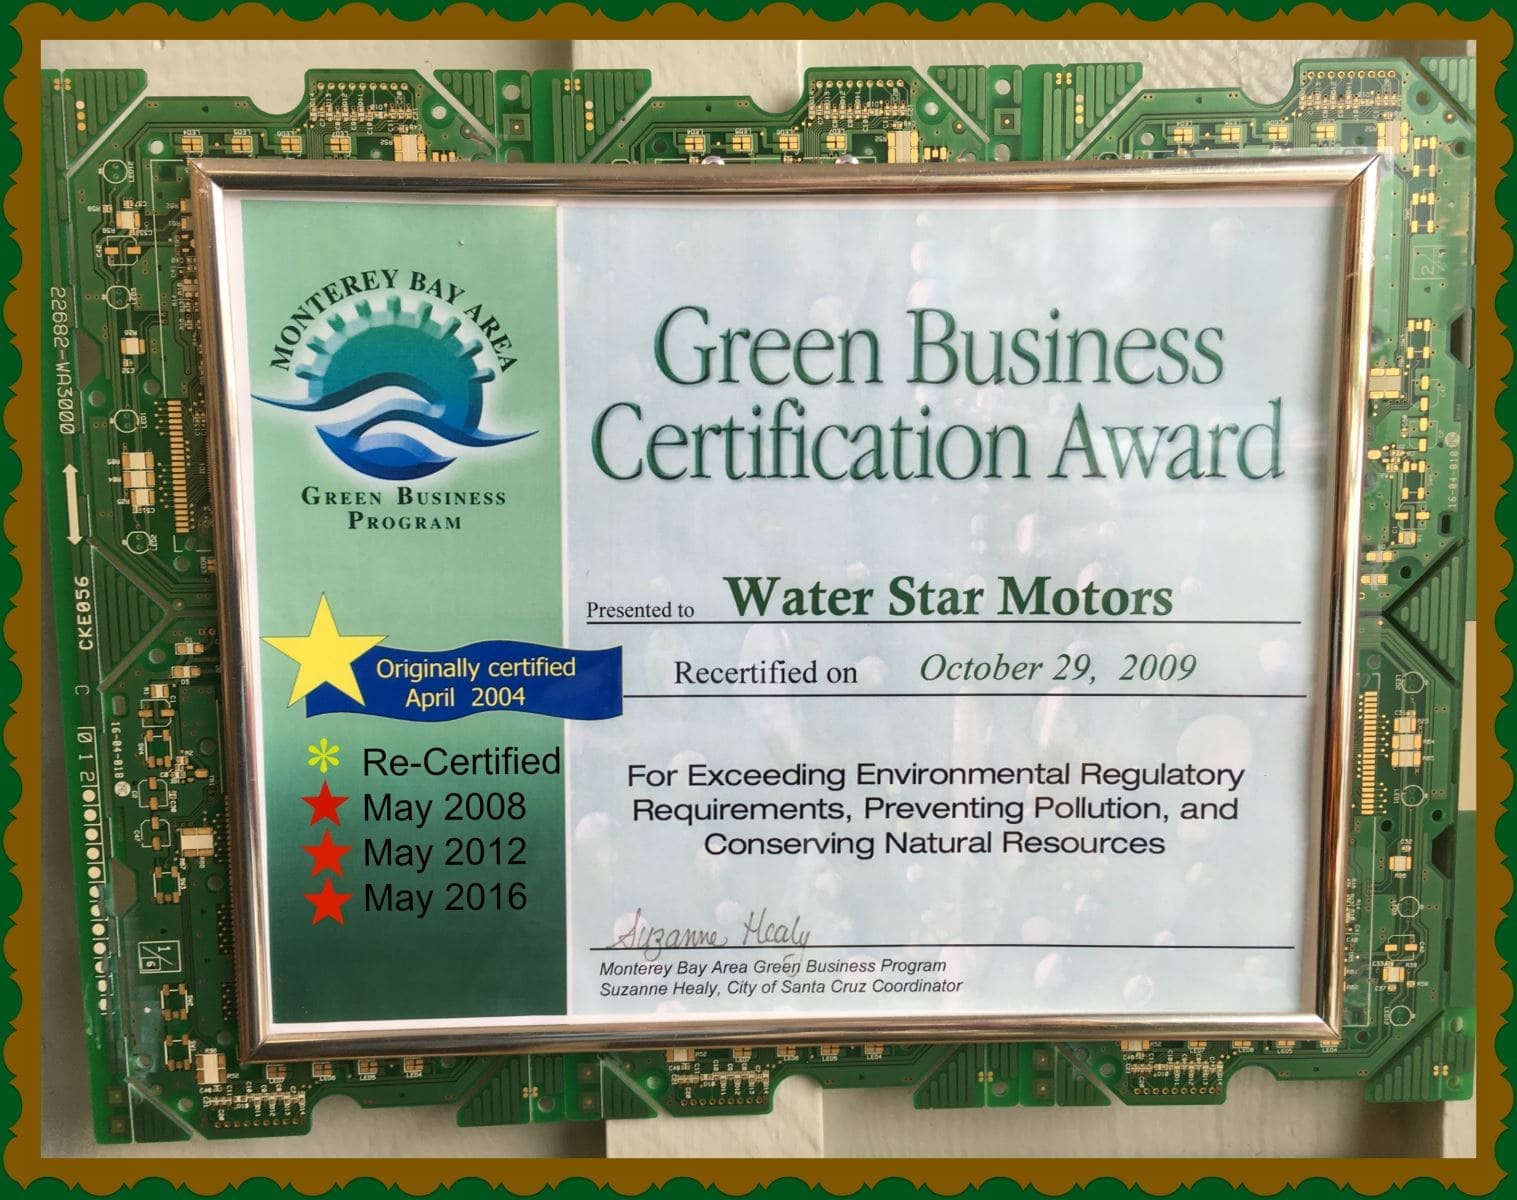 Green Business Certification award for Water Star Motors in Santa Cruz